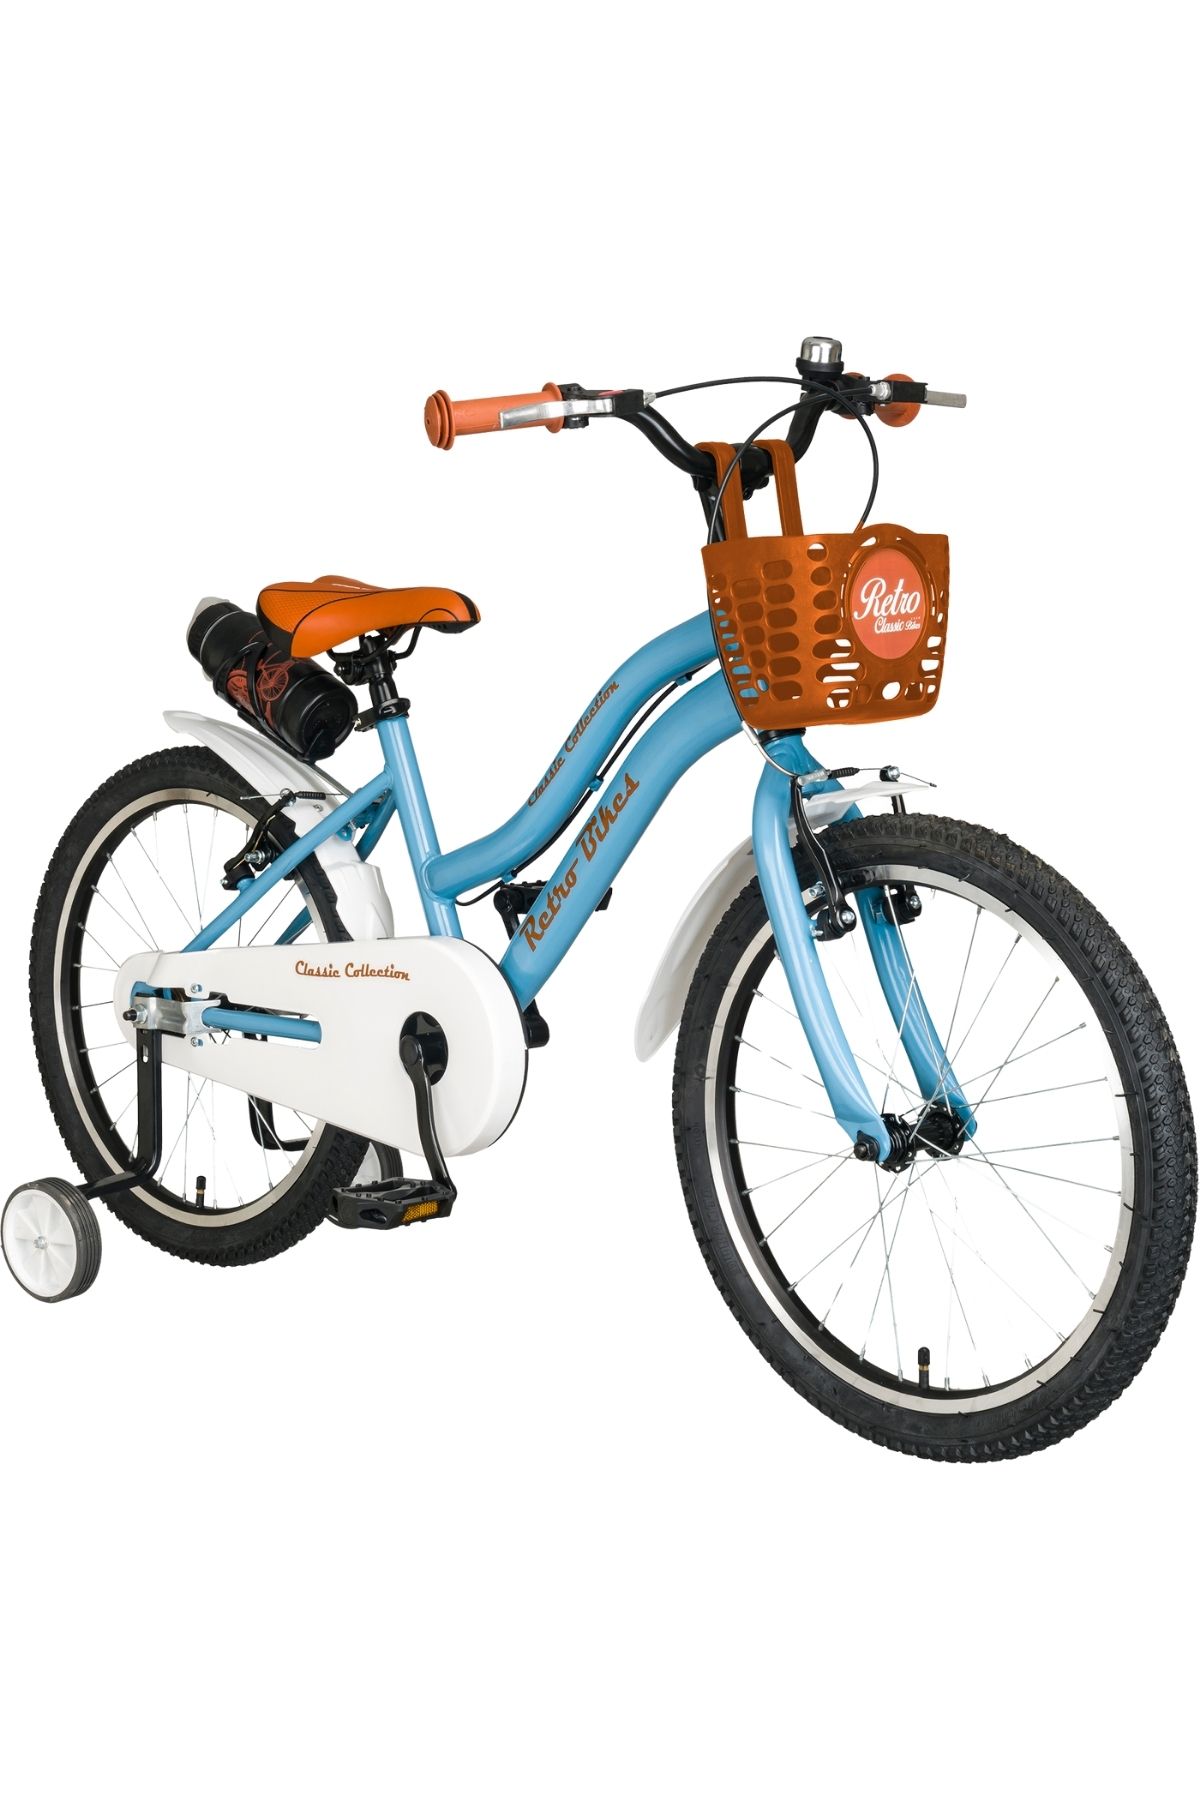 Trendbisiklet Retro Classic 20 Jant Çocuk Bisikleti, 6-10 Yaş Mavi-kahve Renkli Çocuk Bisikleti